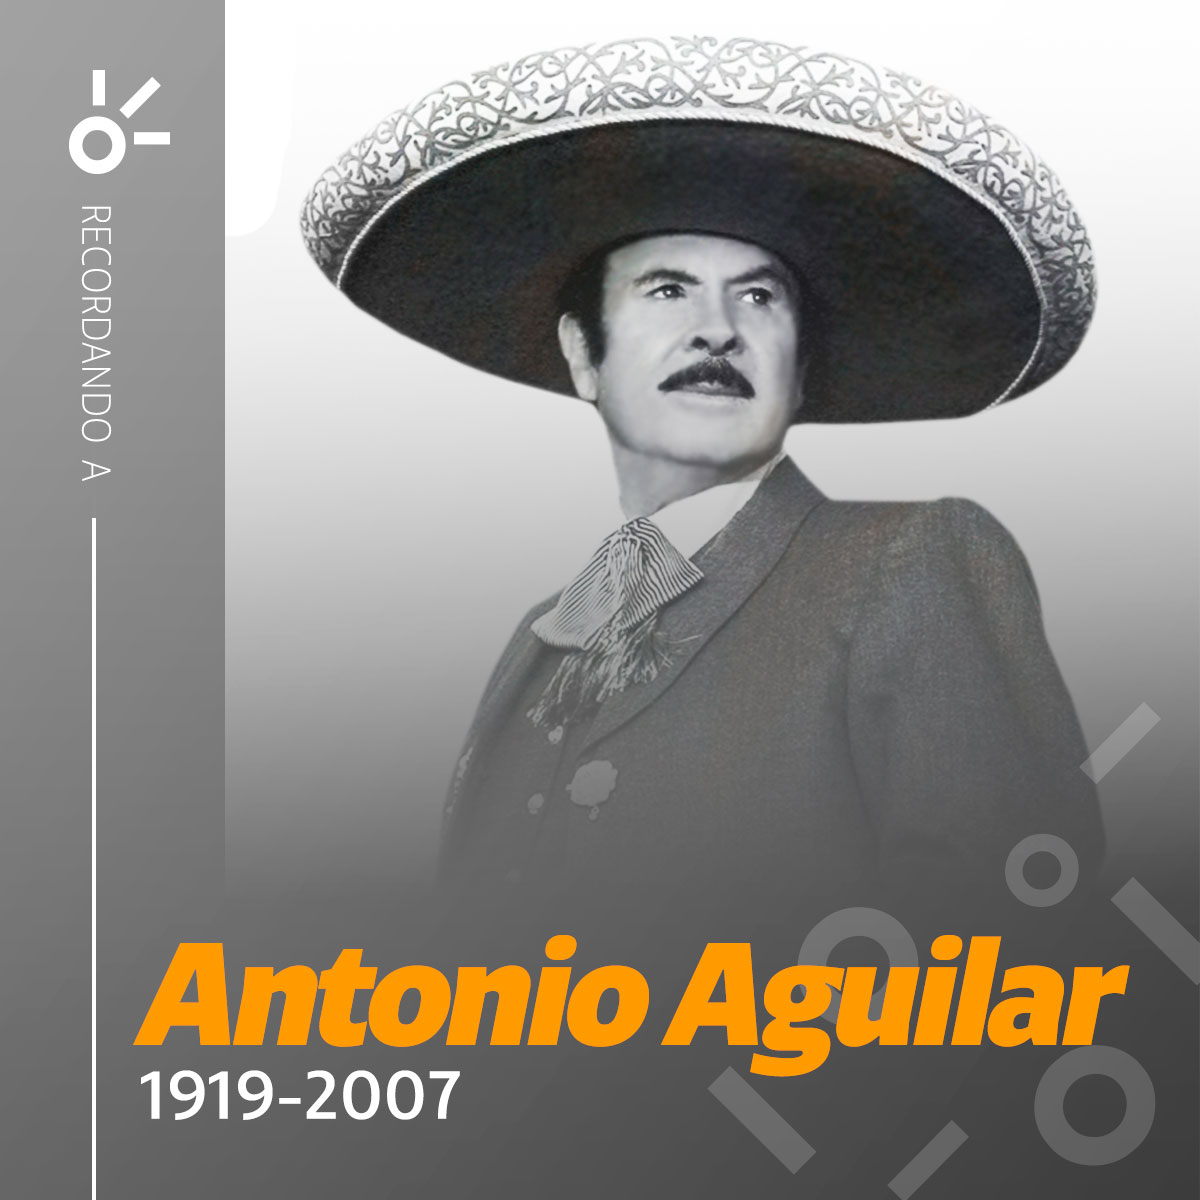 Hoy recordamos a un gigante de la música mexicana, ¡siempre vivirá el gran legado de #AntonioAguilar! 🙏🎶 ow.ly/AErN50OPFH3  

#Claromúsica #DinastíaAguilar #TristeRecuerdo